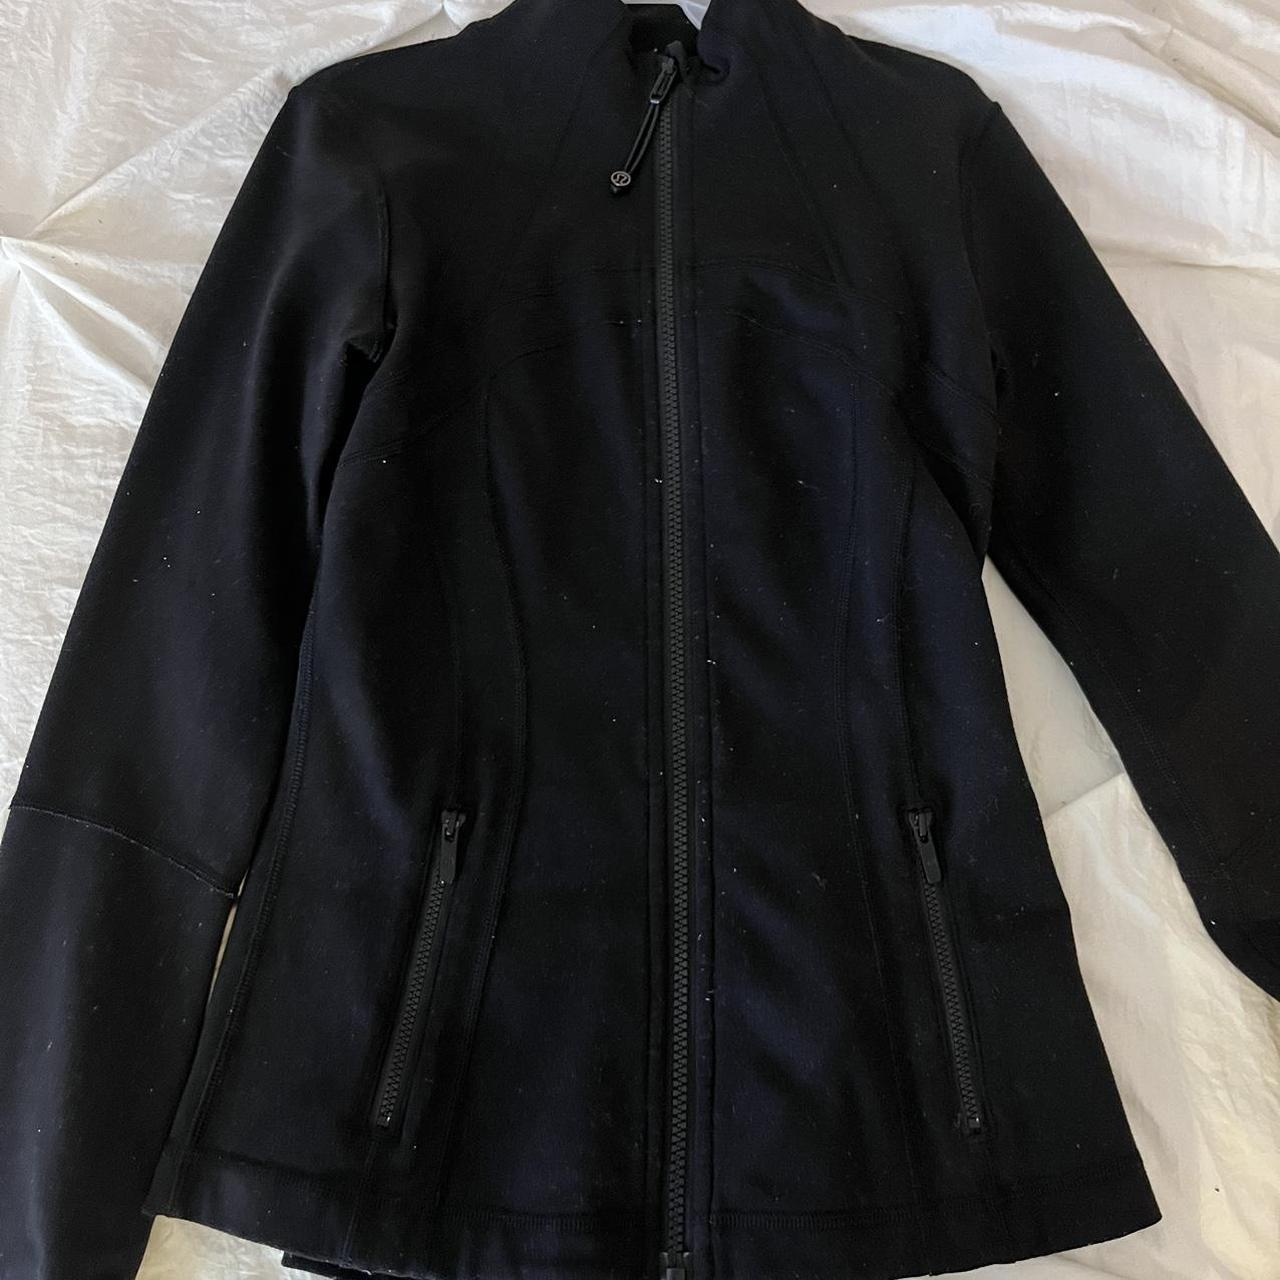 Lululemon black define jacket size 4 got as a gift... - Depop